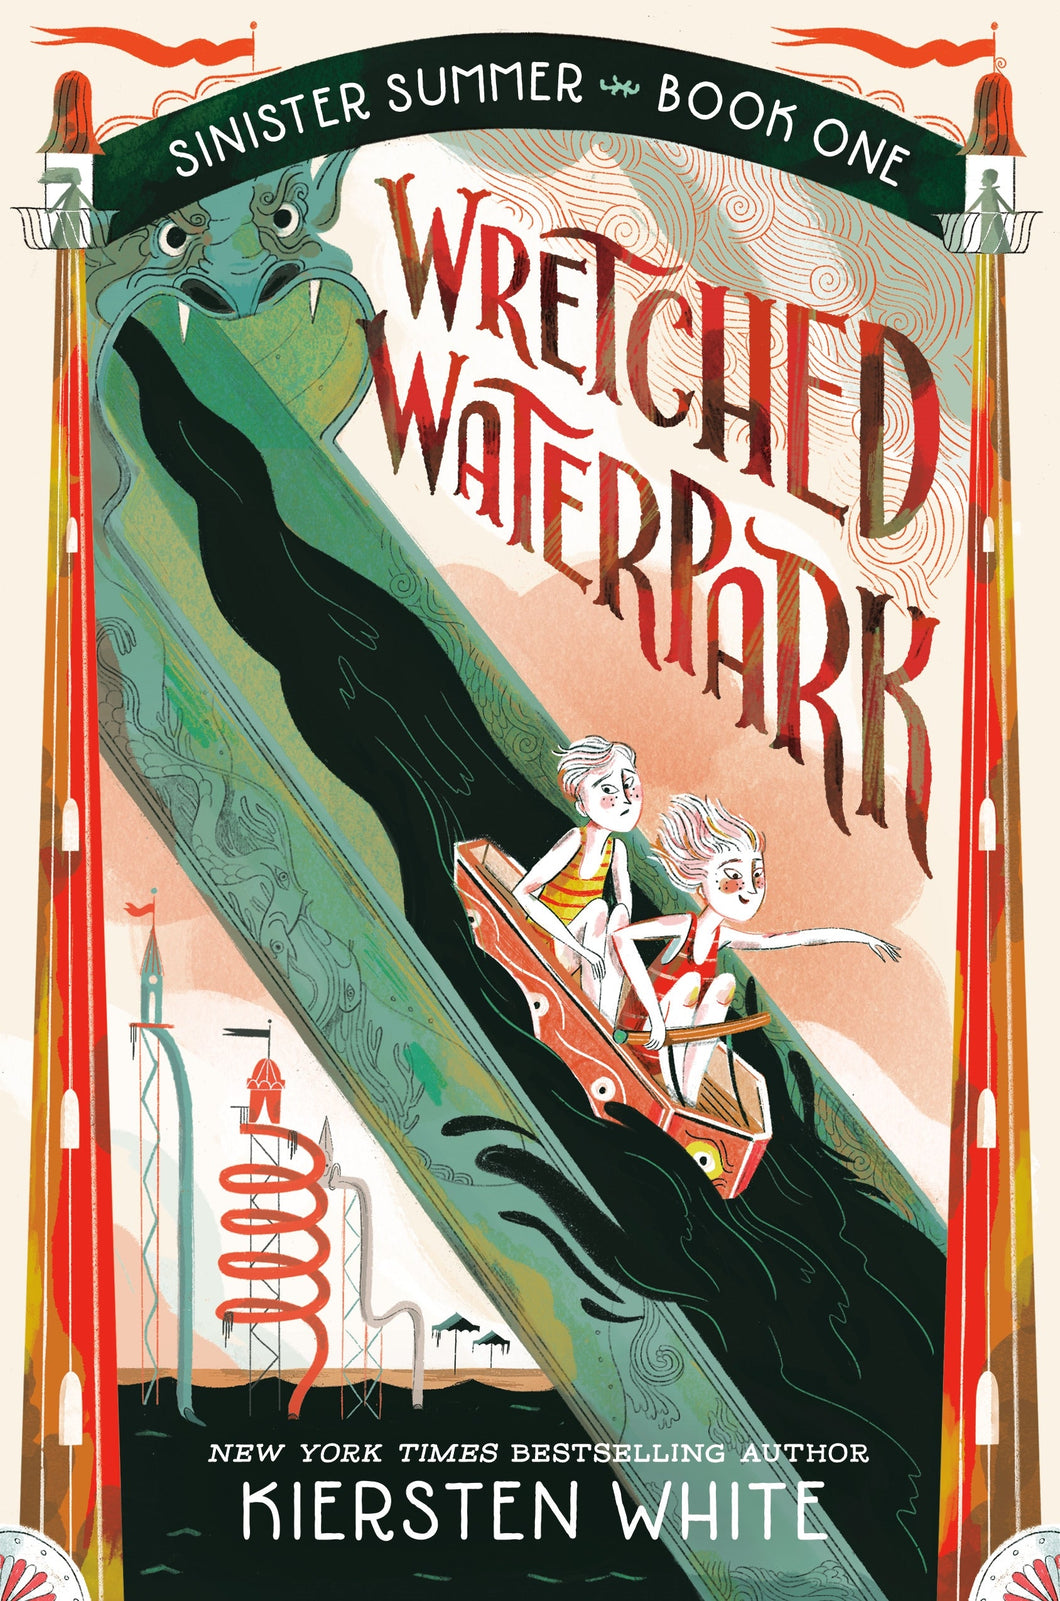 Sinister Summer 01: Wretched Waterpark - Kiersten White